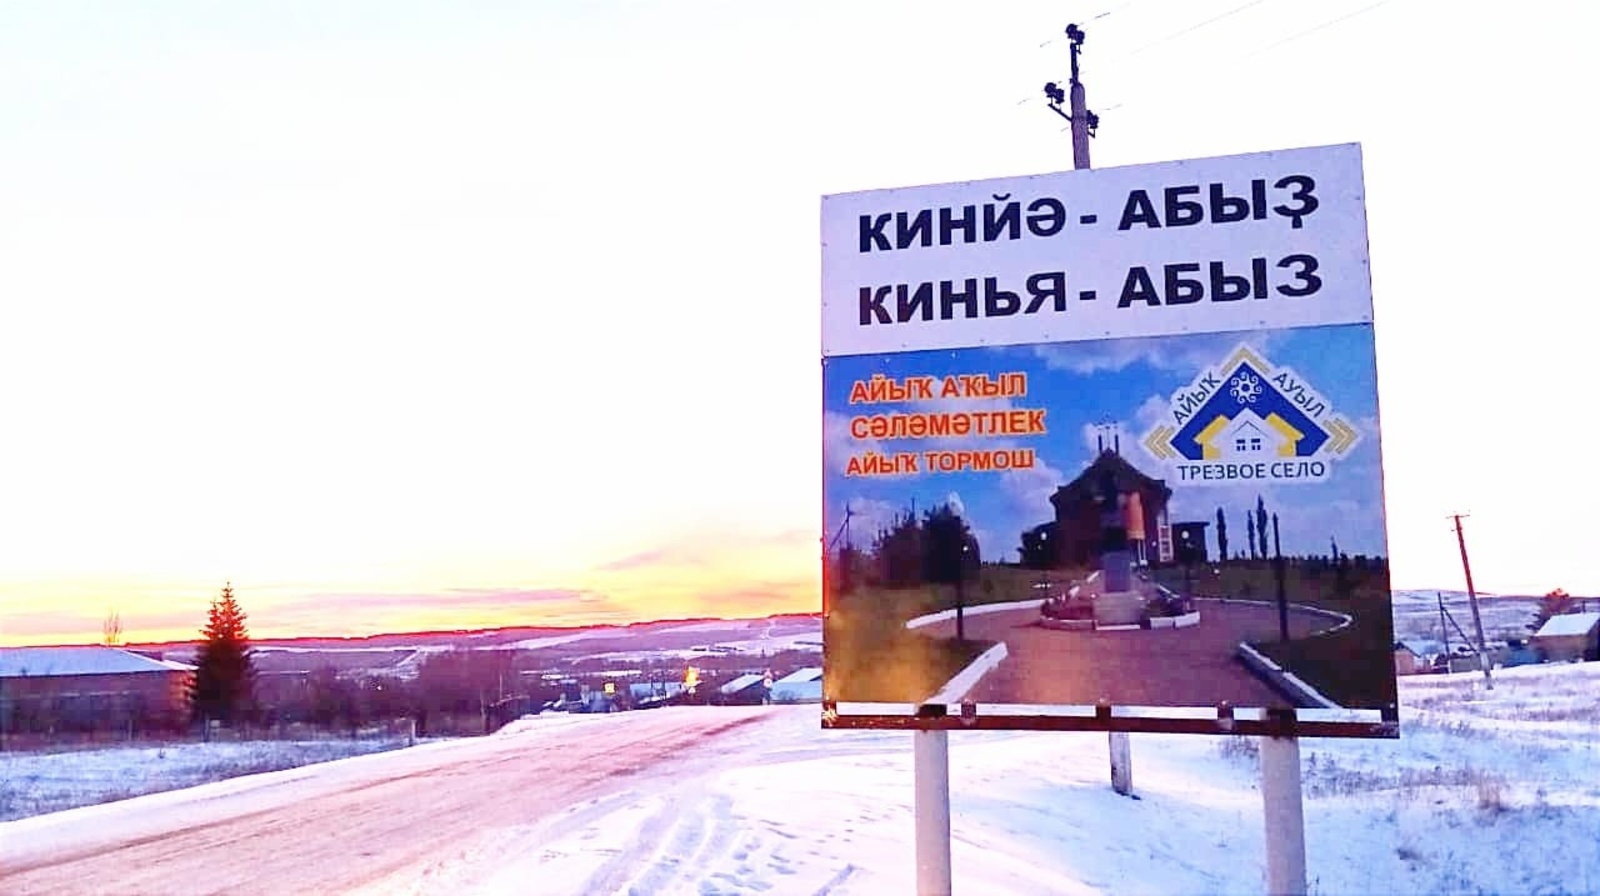 В Башкирии перенесли сроки проведения конкурса «Трезвое село»